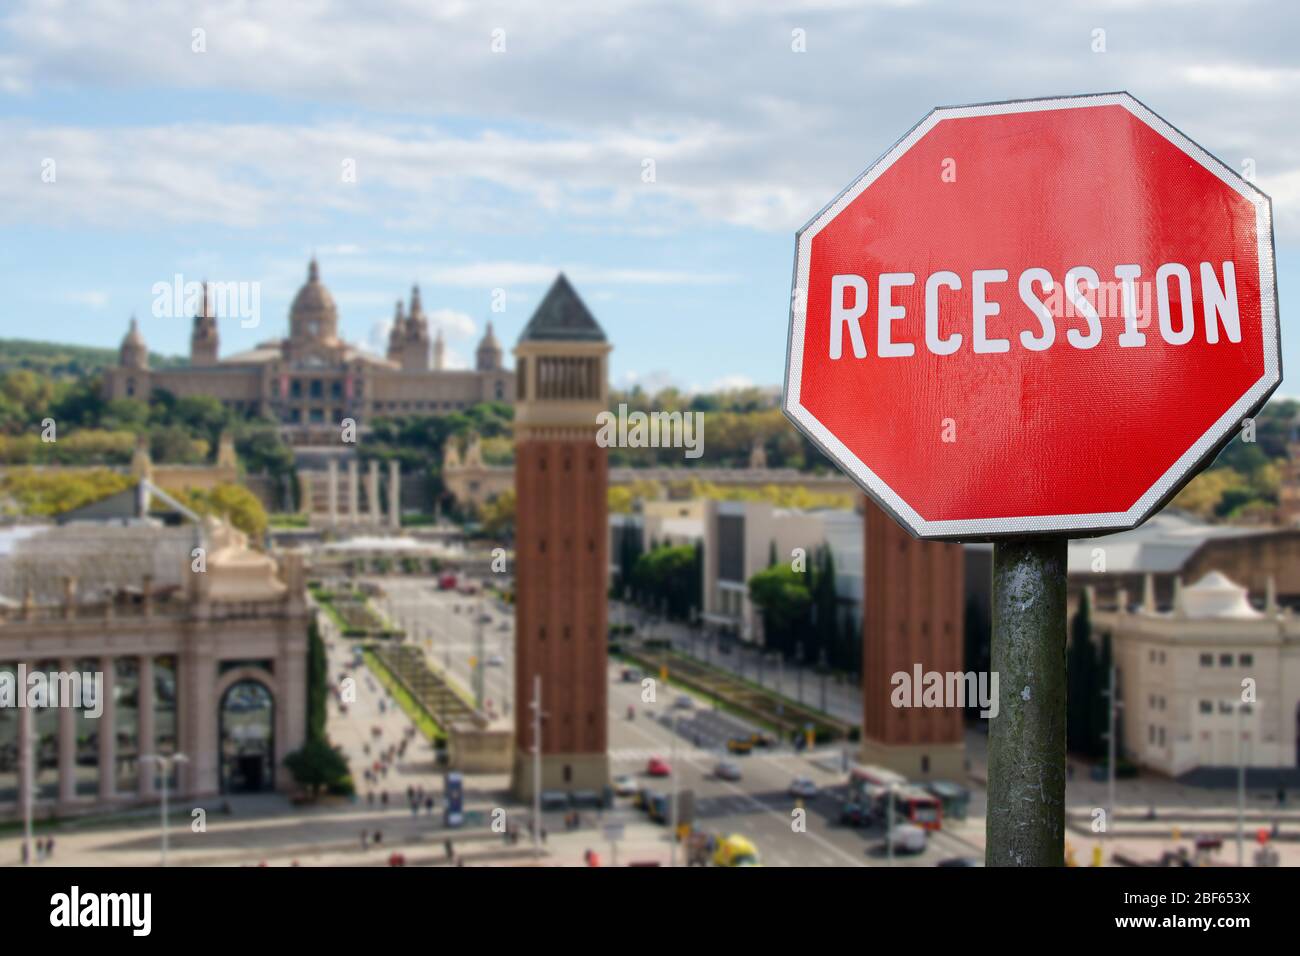 Rückschlagschild mit Blick auf den spanischen Platz in Barcelona, Spanien. Finanzcrash in der Weltwirtschaft wegen der Coronavirus-Pandemie. Globale Wirtschaft Stockfoto